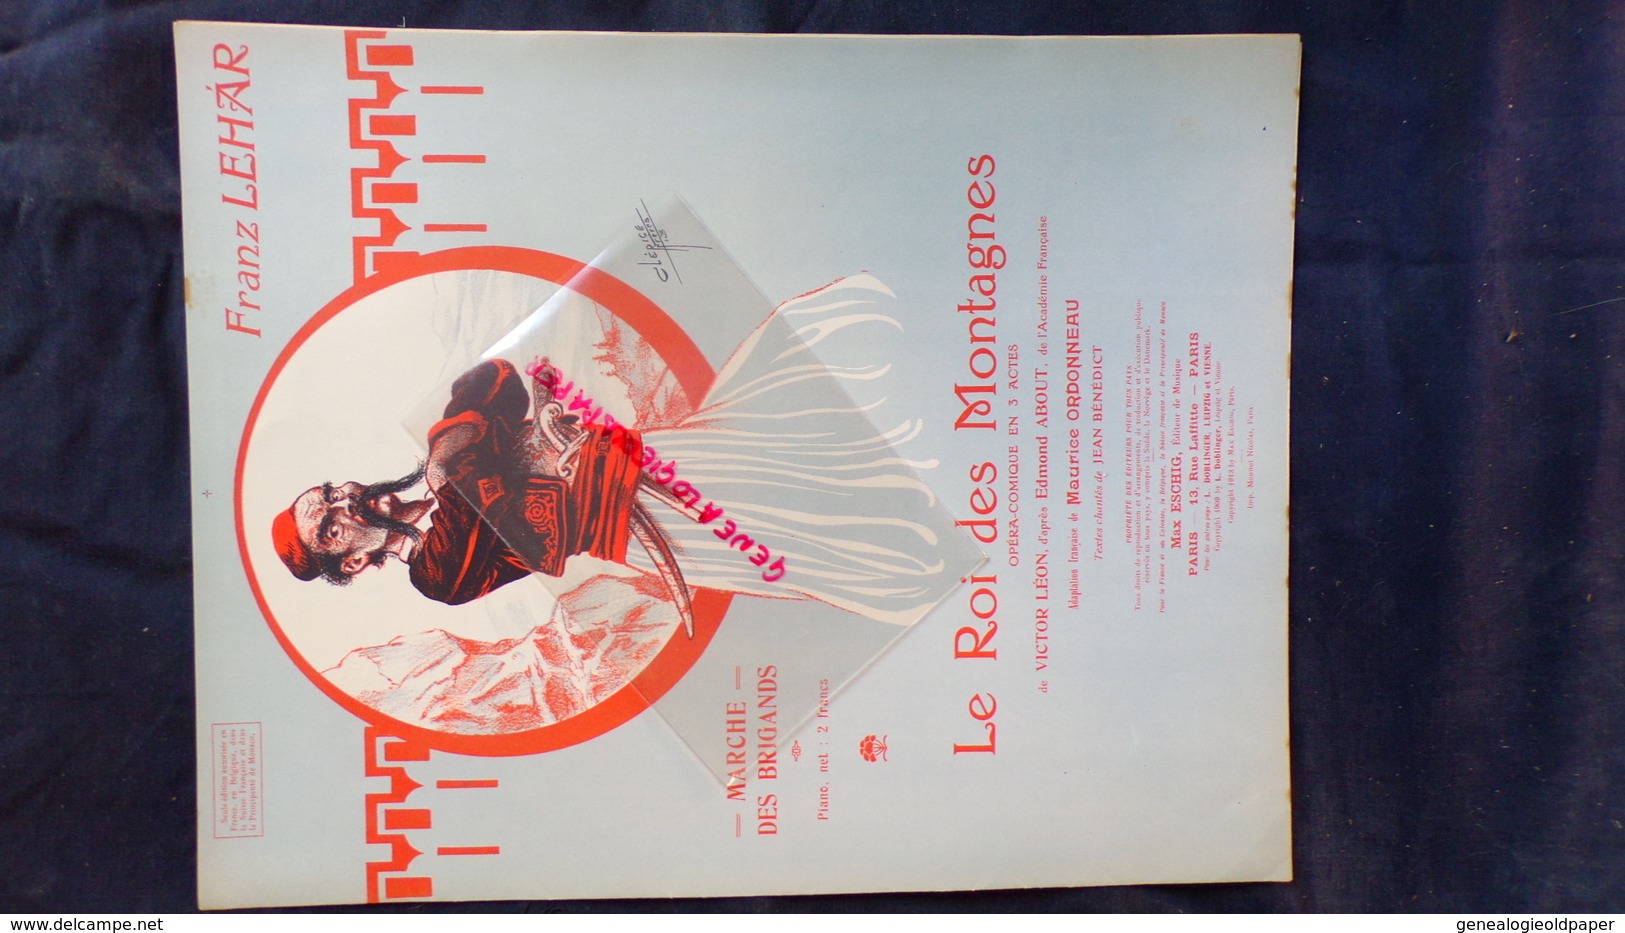 PARTITION MUSICALE-FRANZ LEHAR-MARCHE DES BRIGANDS- ROI DES MONTAGNES-CLERICE 1913-OPERA-VICTOR LEON- ABOUT-ESCHIG PARIS - Scores & Partitions